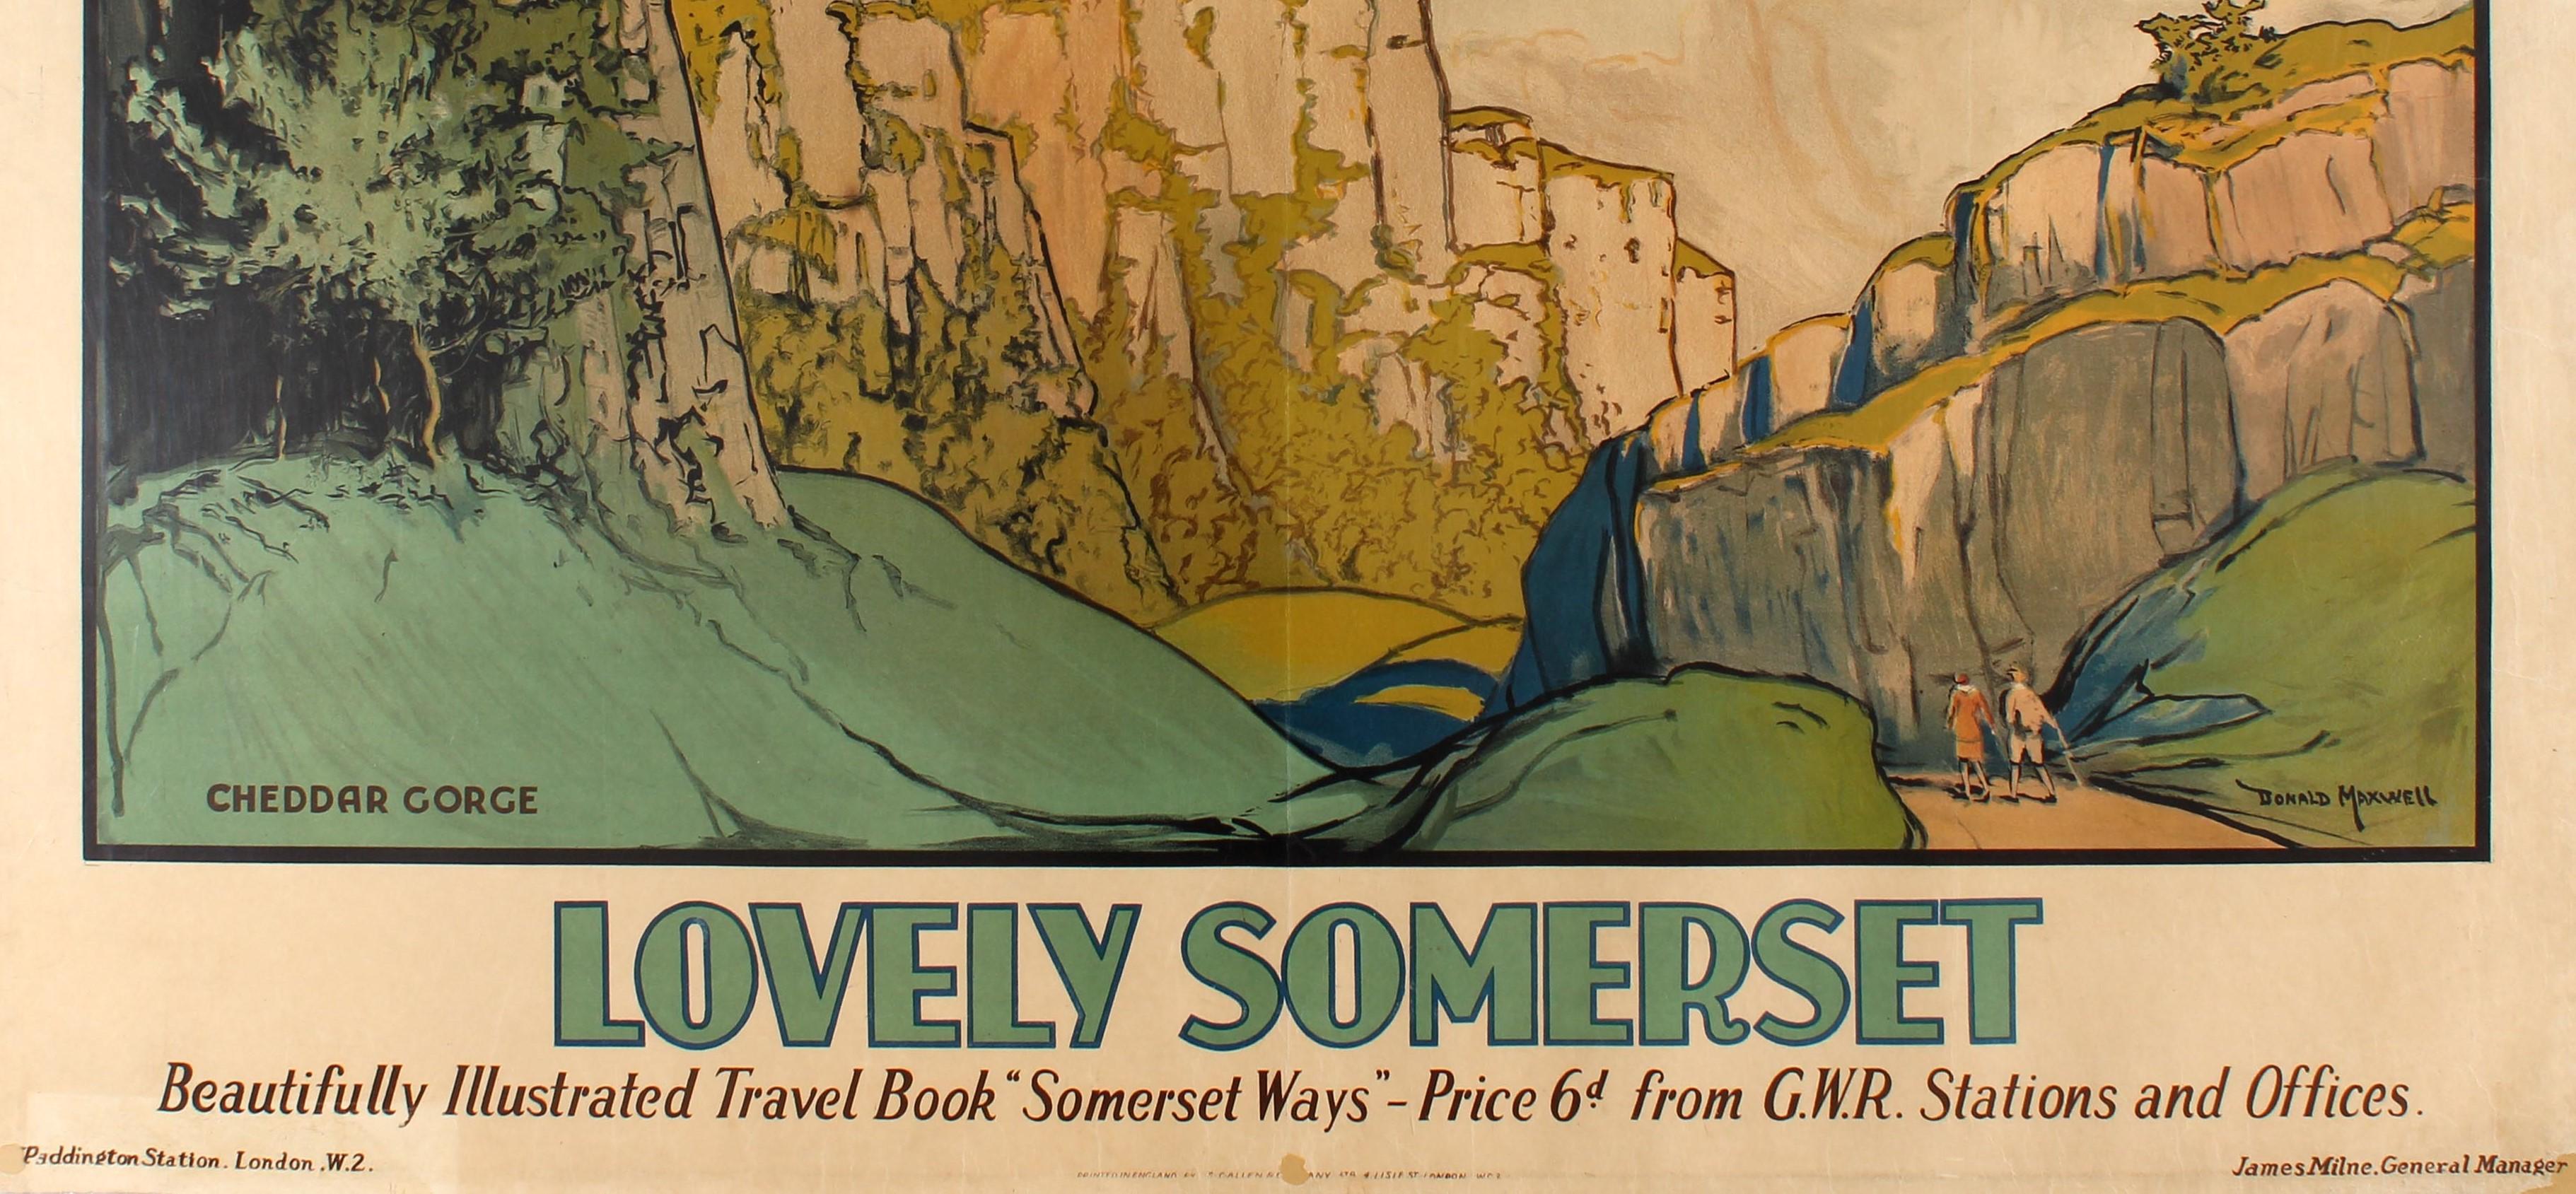 Original-Reiseposter Great Western Railway Lovely Somerset Schön illustriertes Reisebuch Somerset Ways - Preis 6d von GWR Stations and Offices mit einem malerischen Landschaftsgemälde des englischen Illustrators Donald Maxwell (1877-1936), das zwei